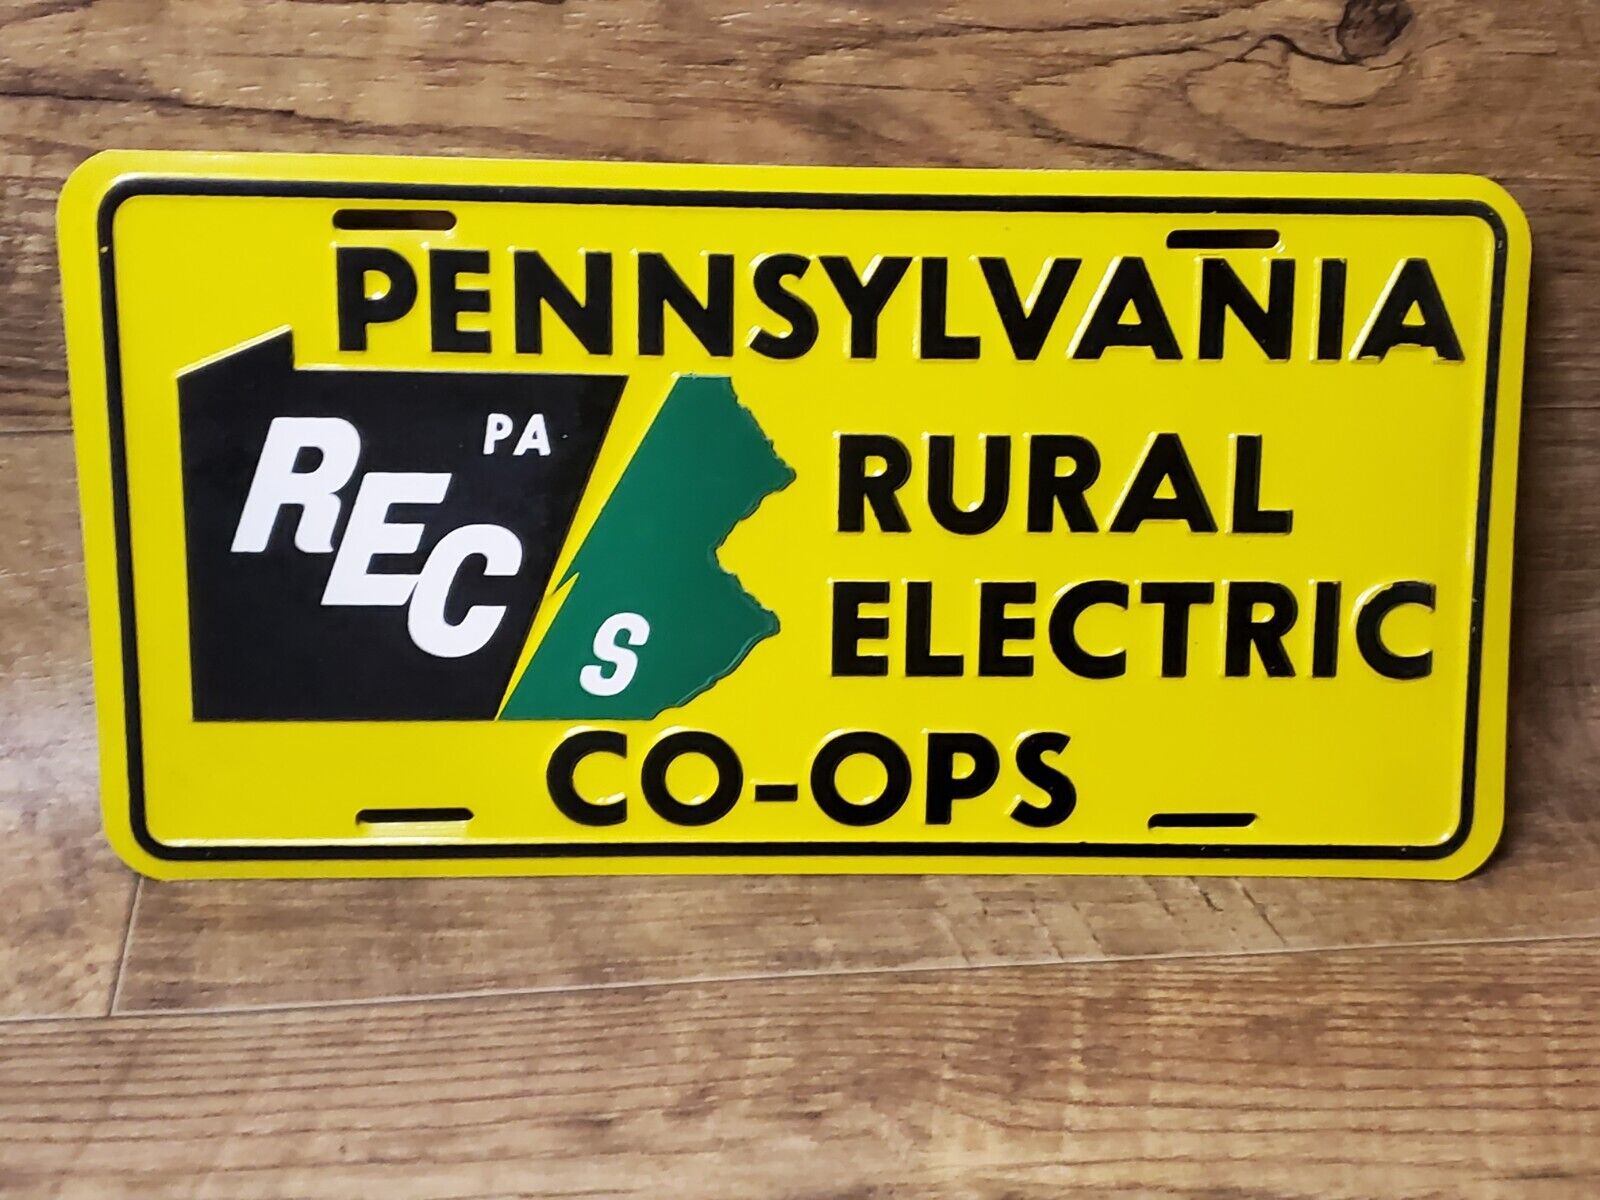 Vintage Pennsylvania RURAL ELECTRIC CO-OP Advertising Metal LICENSE PLATE